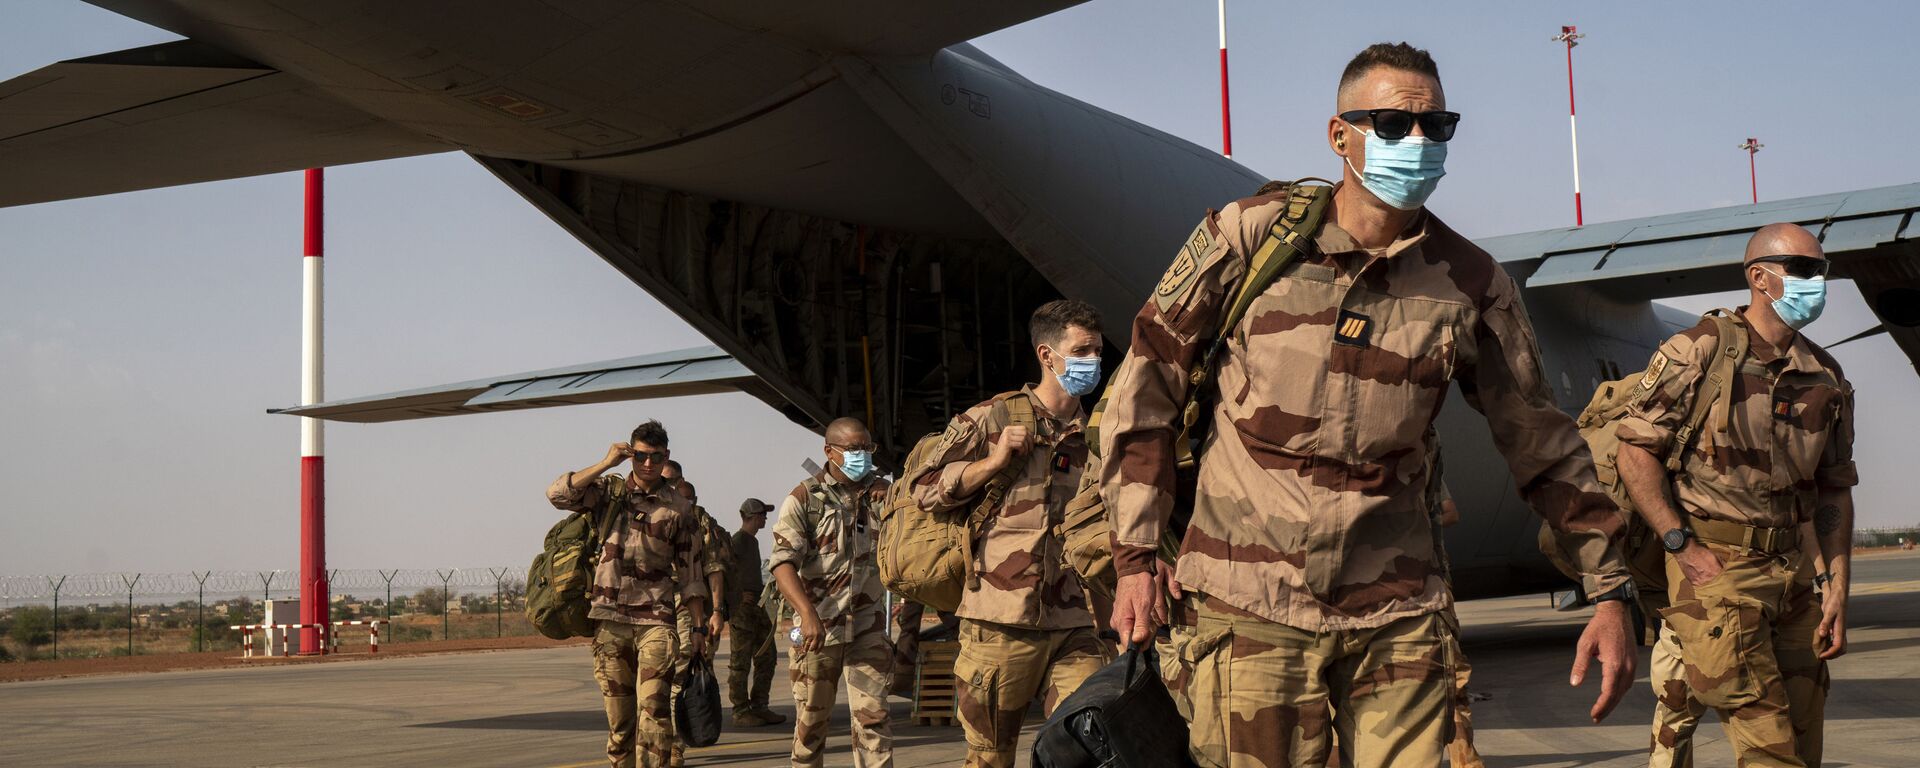 Soldados franceses da operação Barkhane chegando de Gao, Mali, desembarcaram de um avião de carga C130 da Força Aérea dos EUA em Niamey, base do Níger, antes de serem transferidos de volta para suas bases na França, 9 de junho de 2021 - Sputnik Brasil, 1920, 13.07.2021